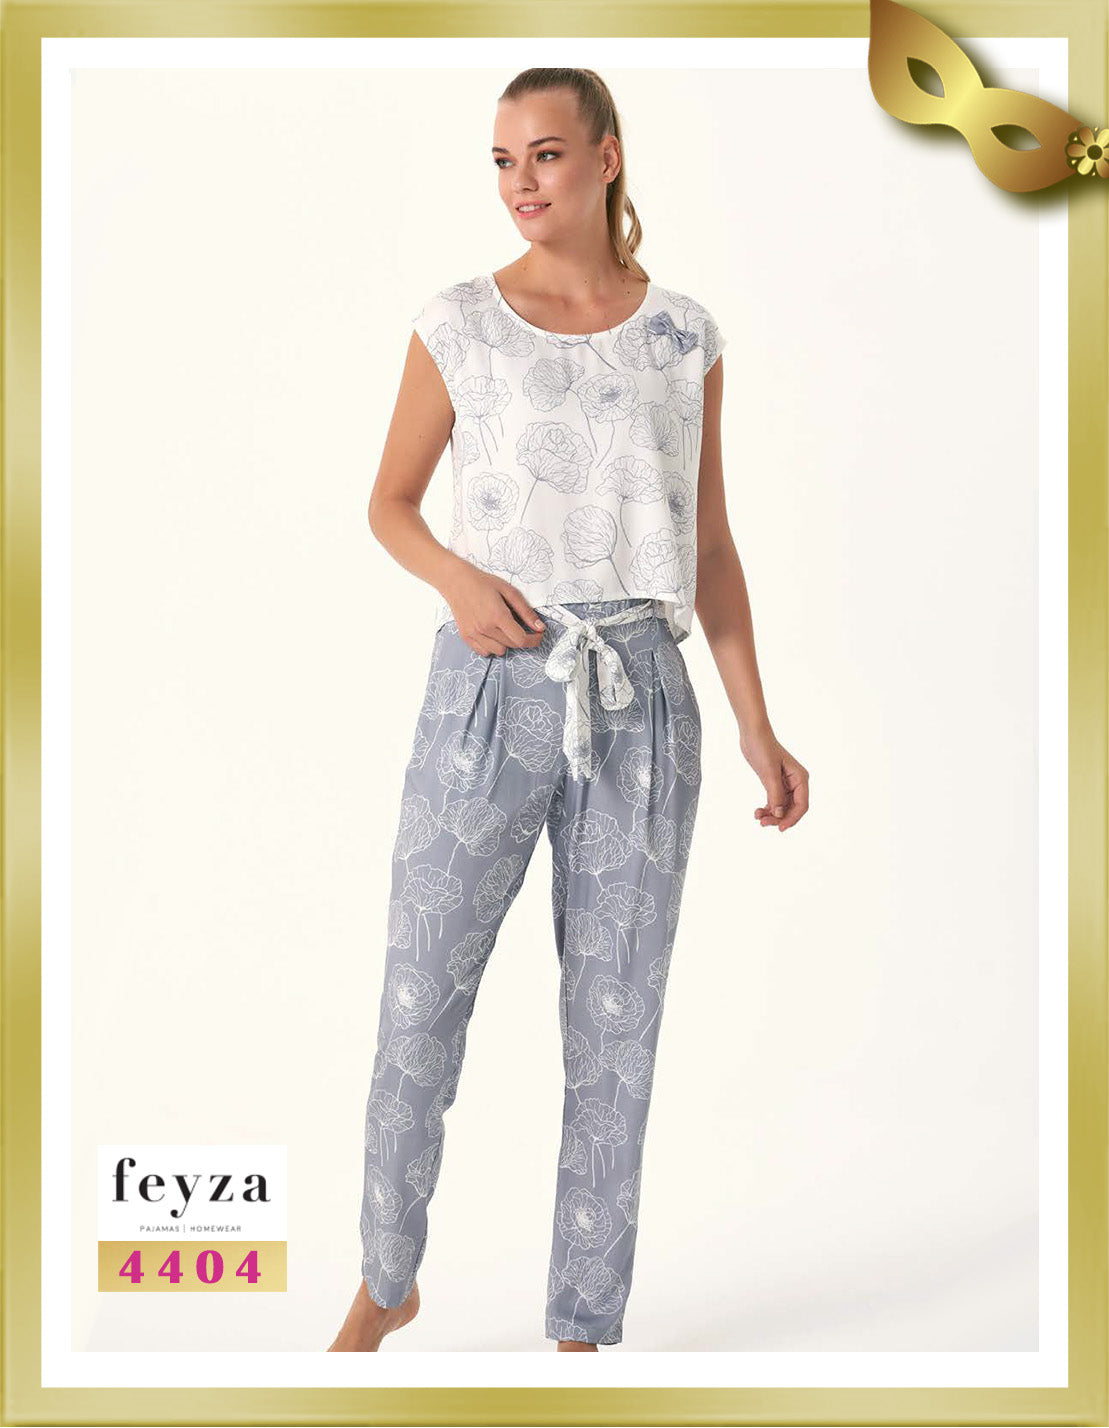 Feyza Short Sleeves Long Printed Pajamas 4404 Manatee